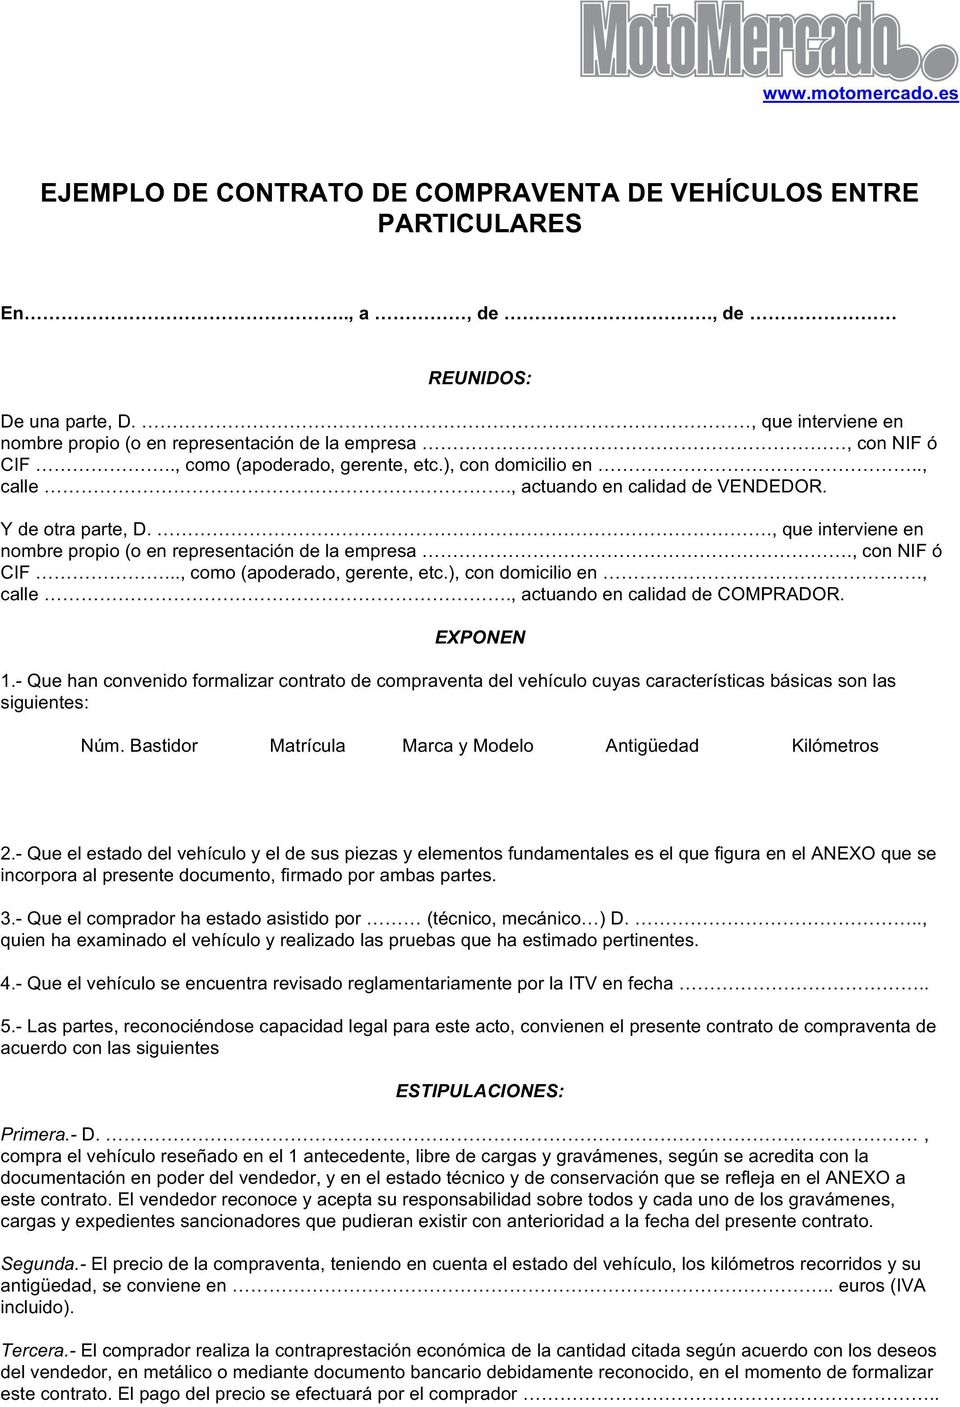 EJEMPLO DE CONTRATO DE COMPRAVENTA DE VEHÍCULOS ENTRE PARTICULARES - PDF  Free Download